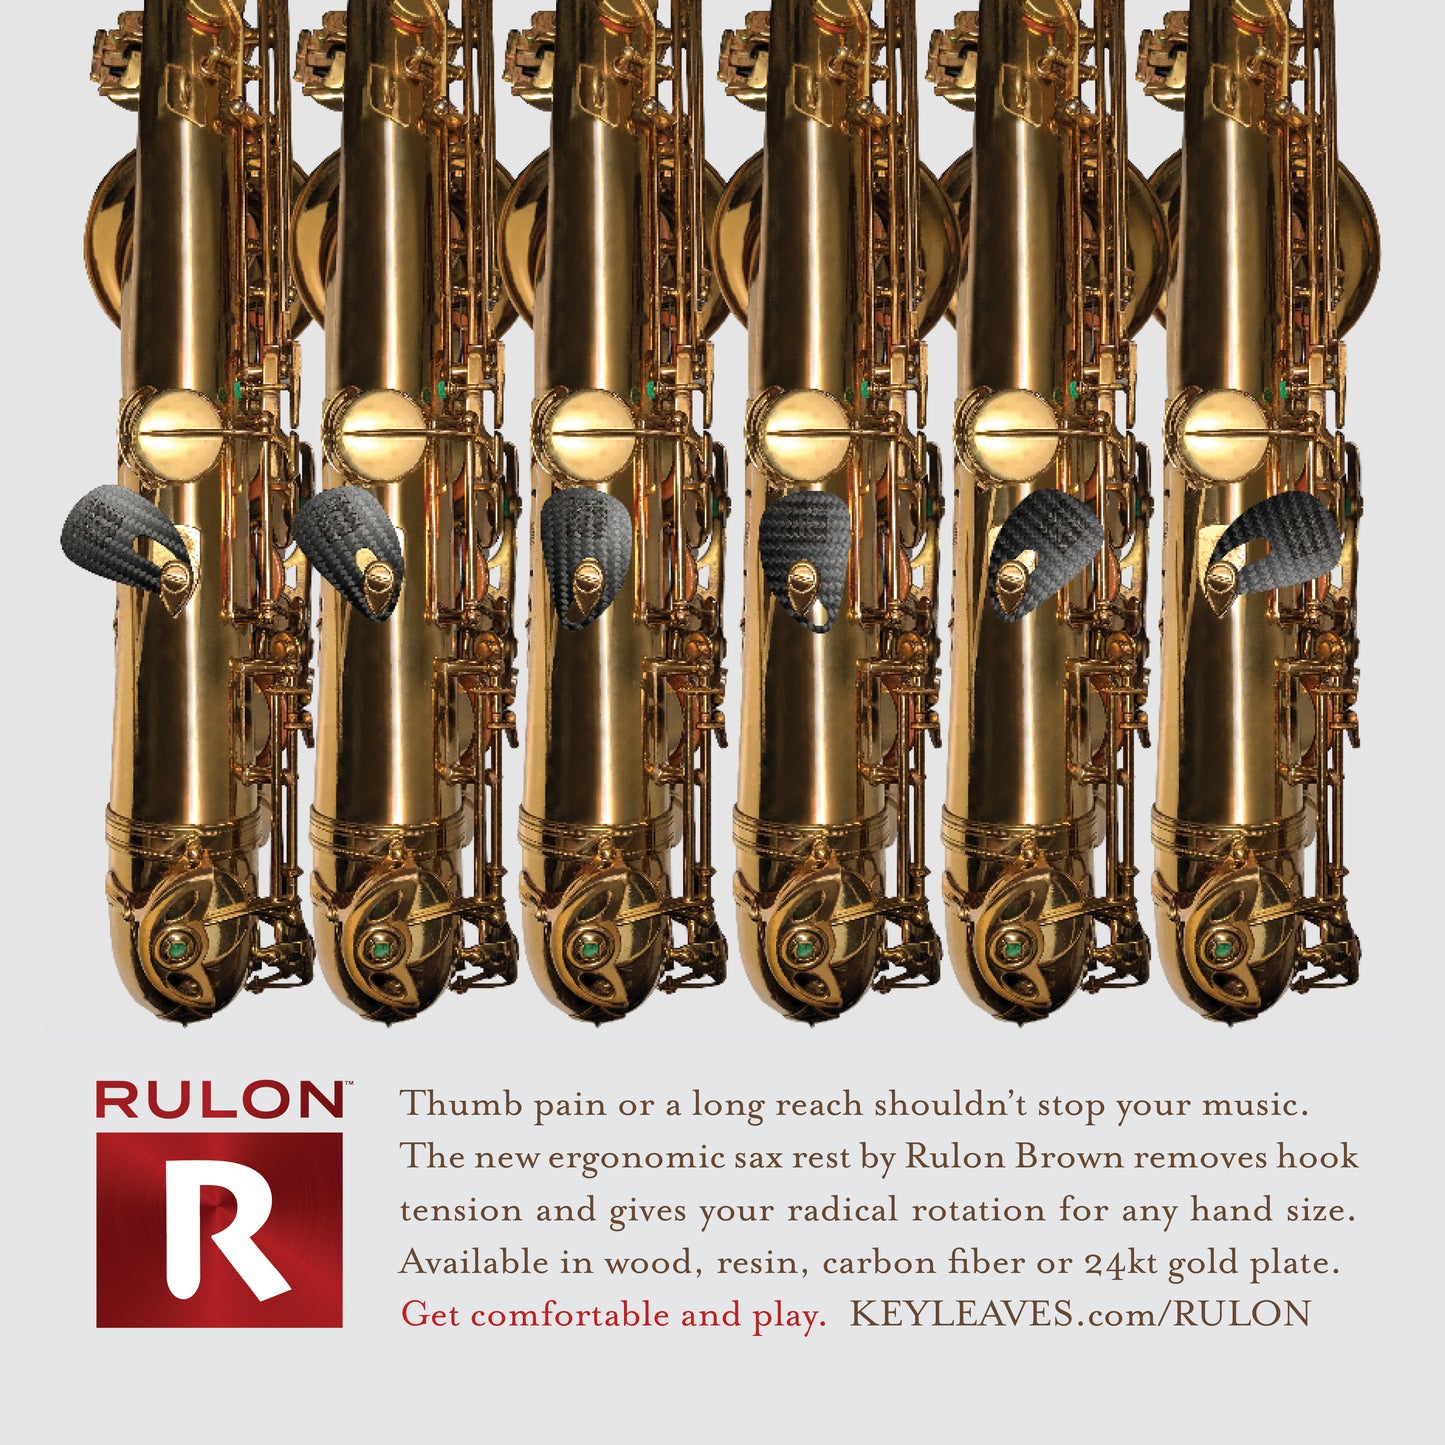 RULON Ergonomic Saxophone Thumb Rest - Black Plastic